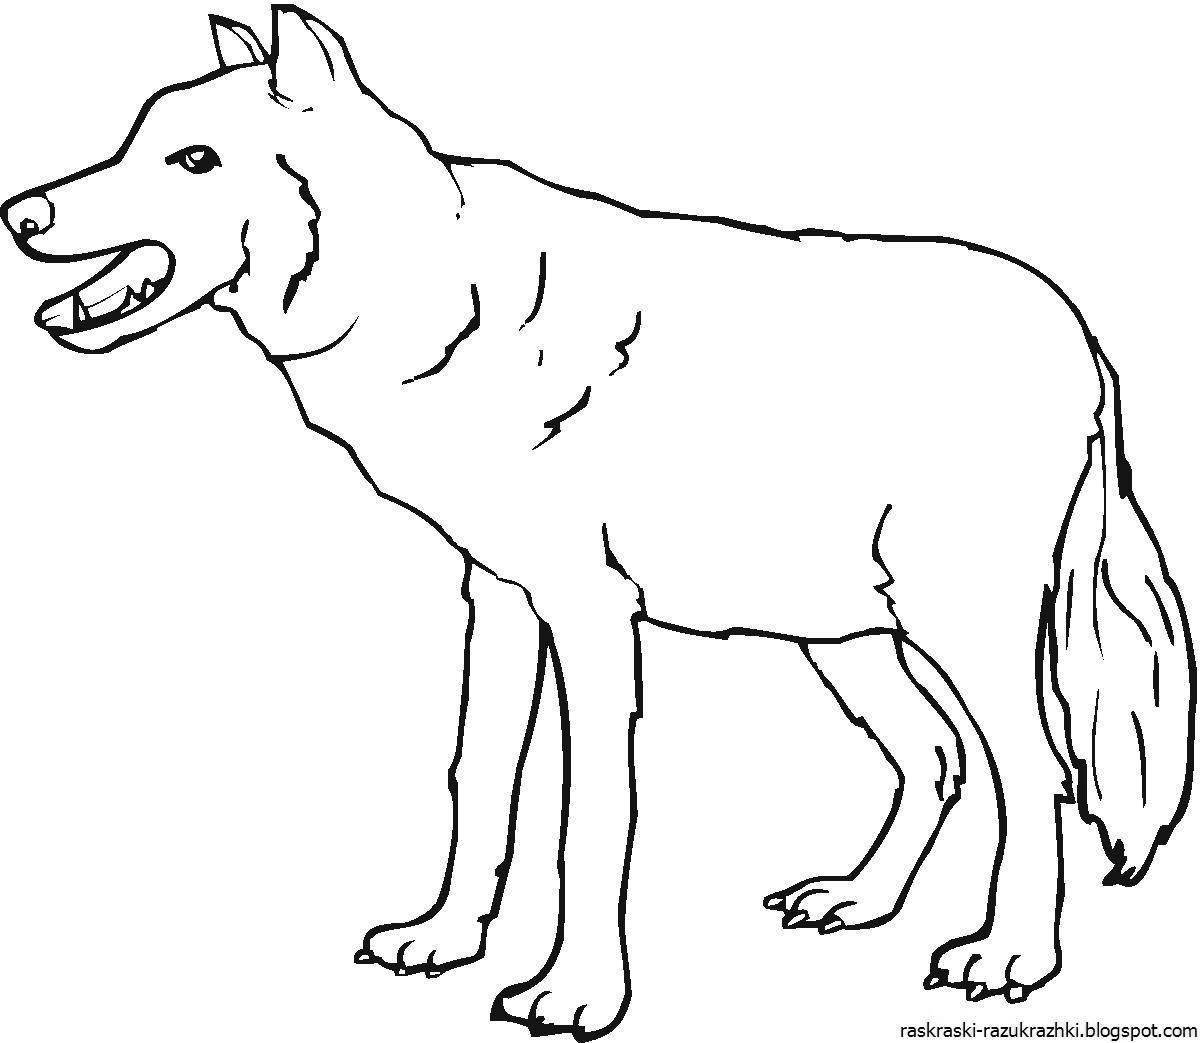 Выдающаяся раскраска рисунок волка для детей